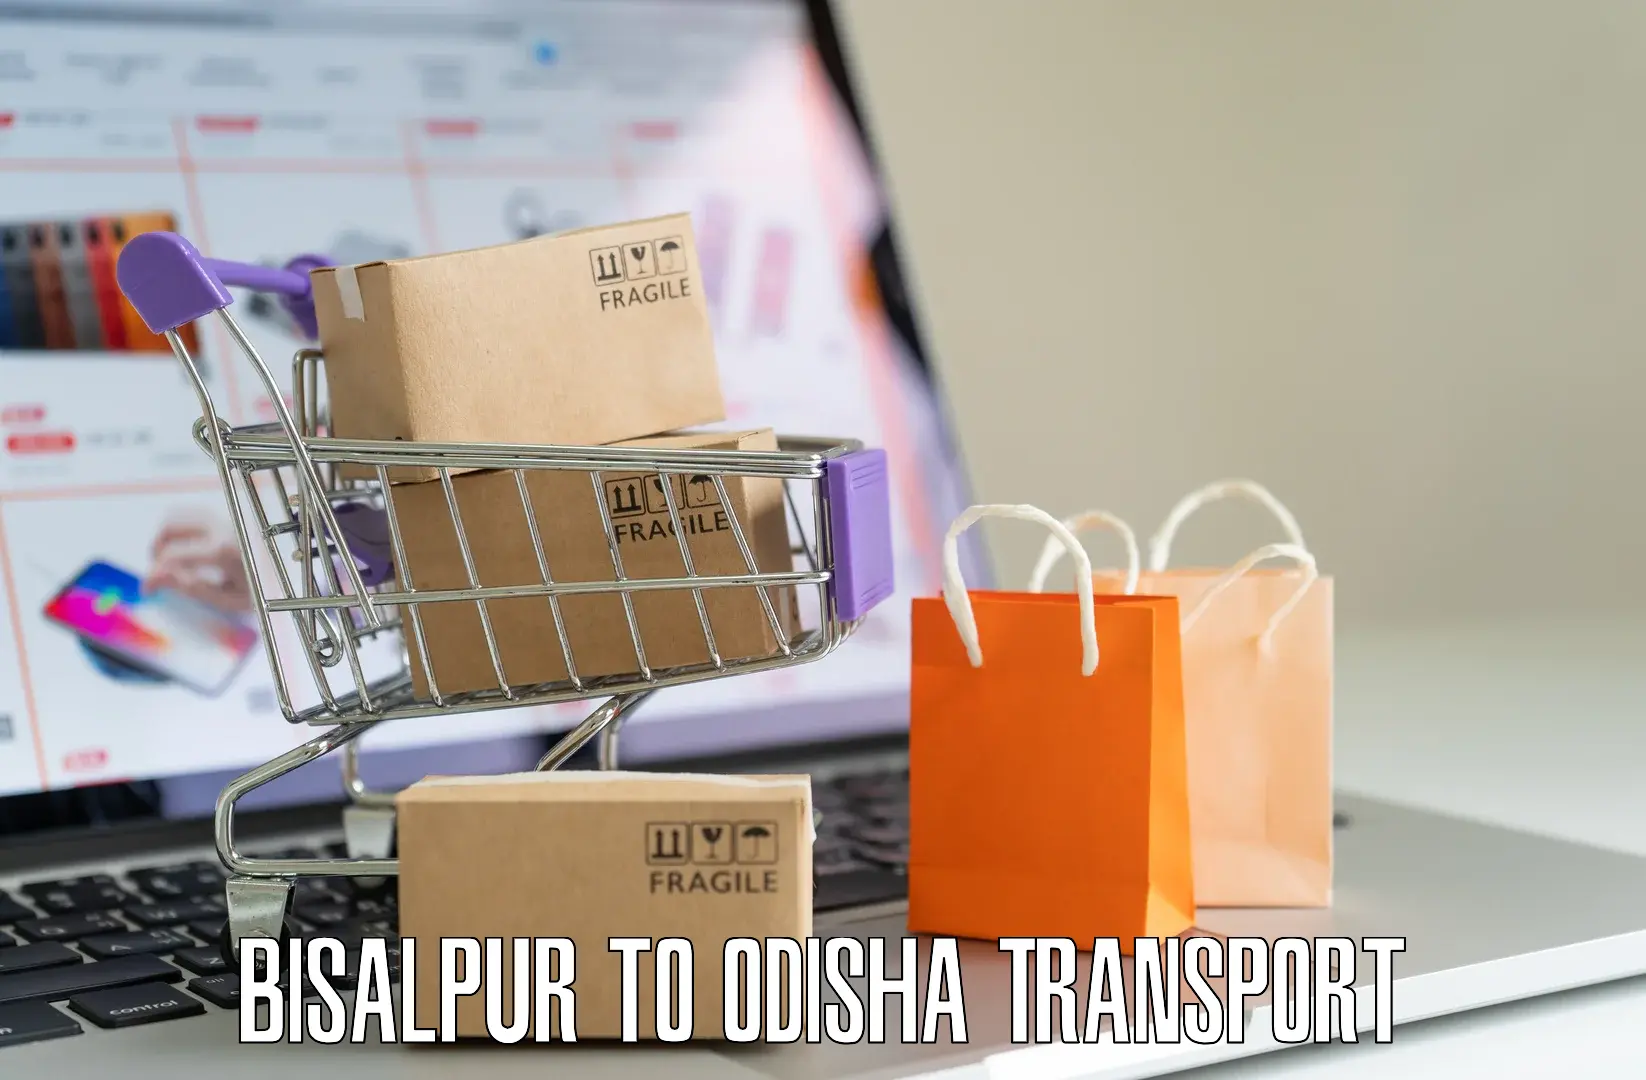 Domestic transport services Bisalpur to Rairakhol